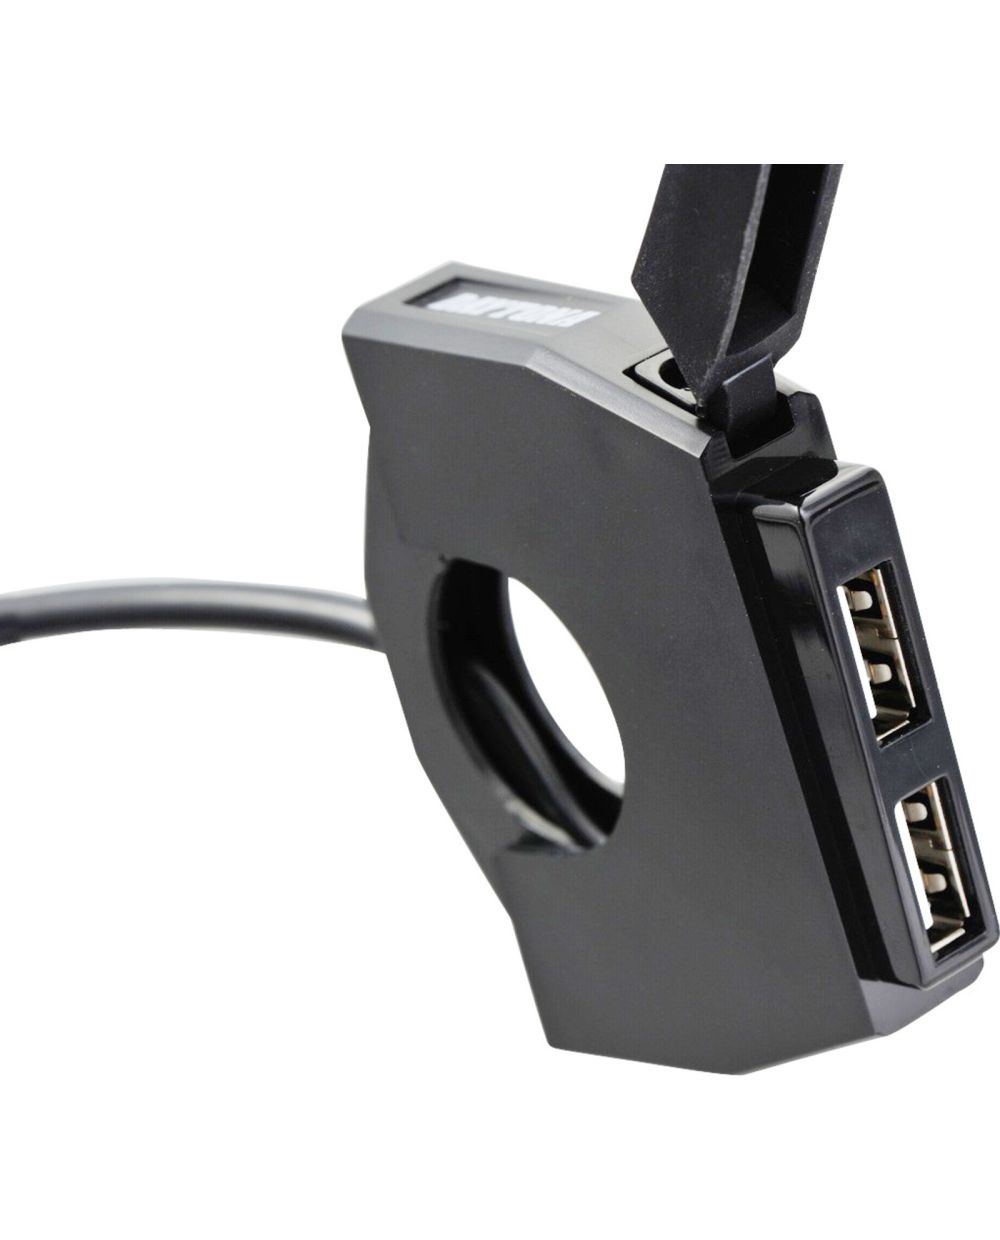 USB-Steckdose im Lenkerschalter-Look mit USB-Port (2.4A max.), nur